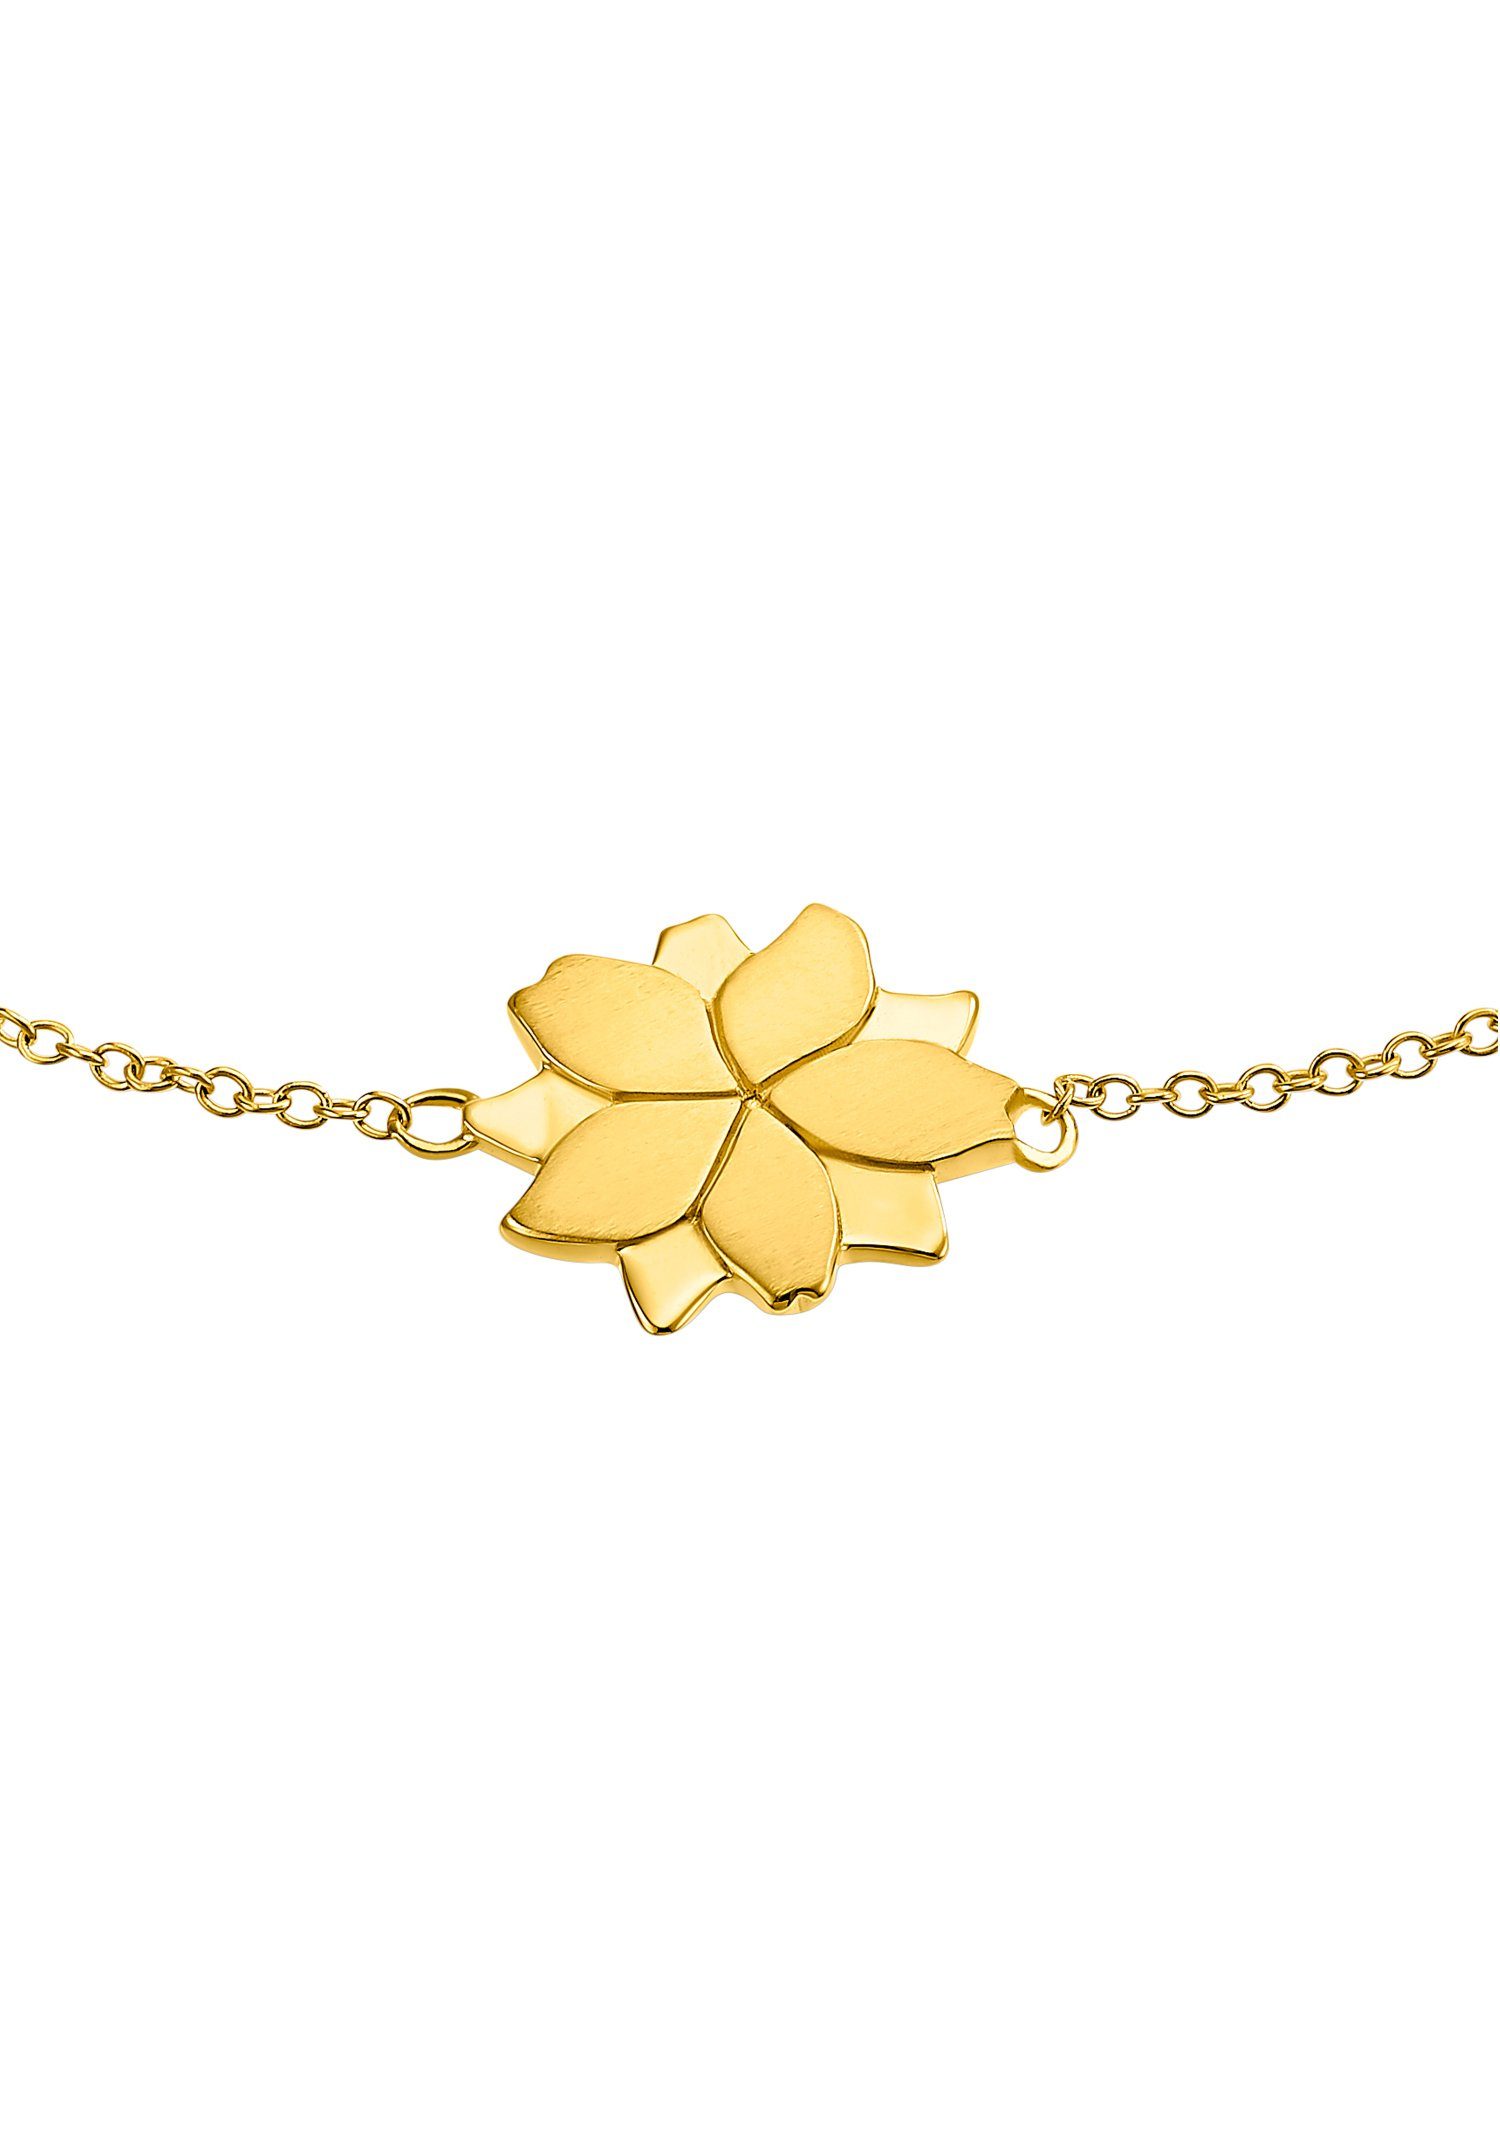 gelbgoldfarben Lotusblüte, 2034193 2034189, Armband s.Oliver